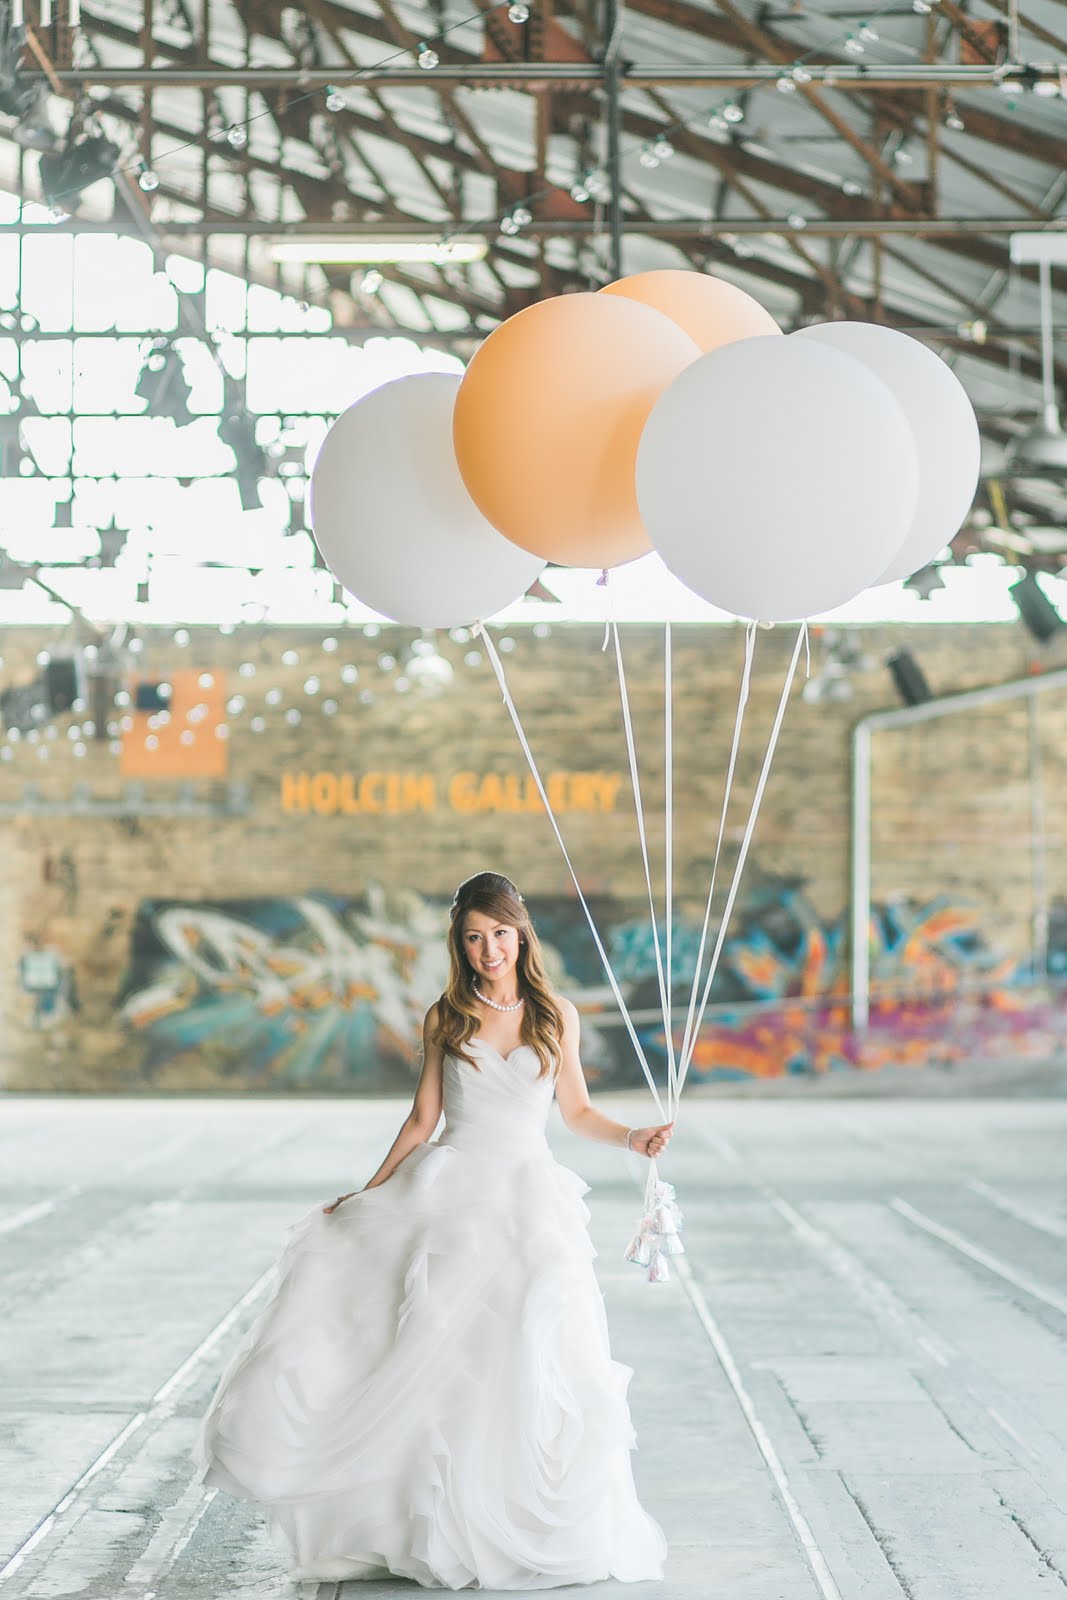 Bride & Balloons